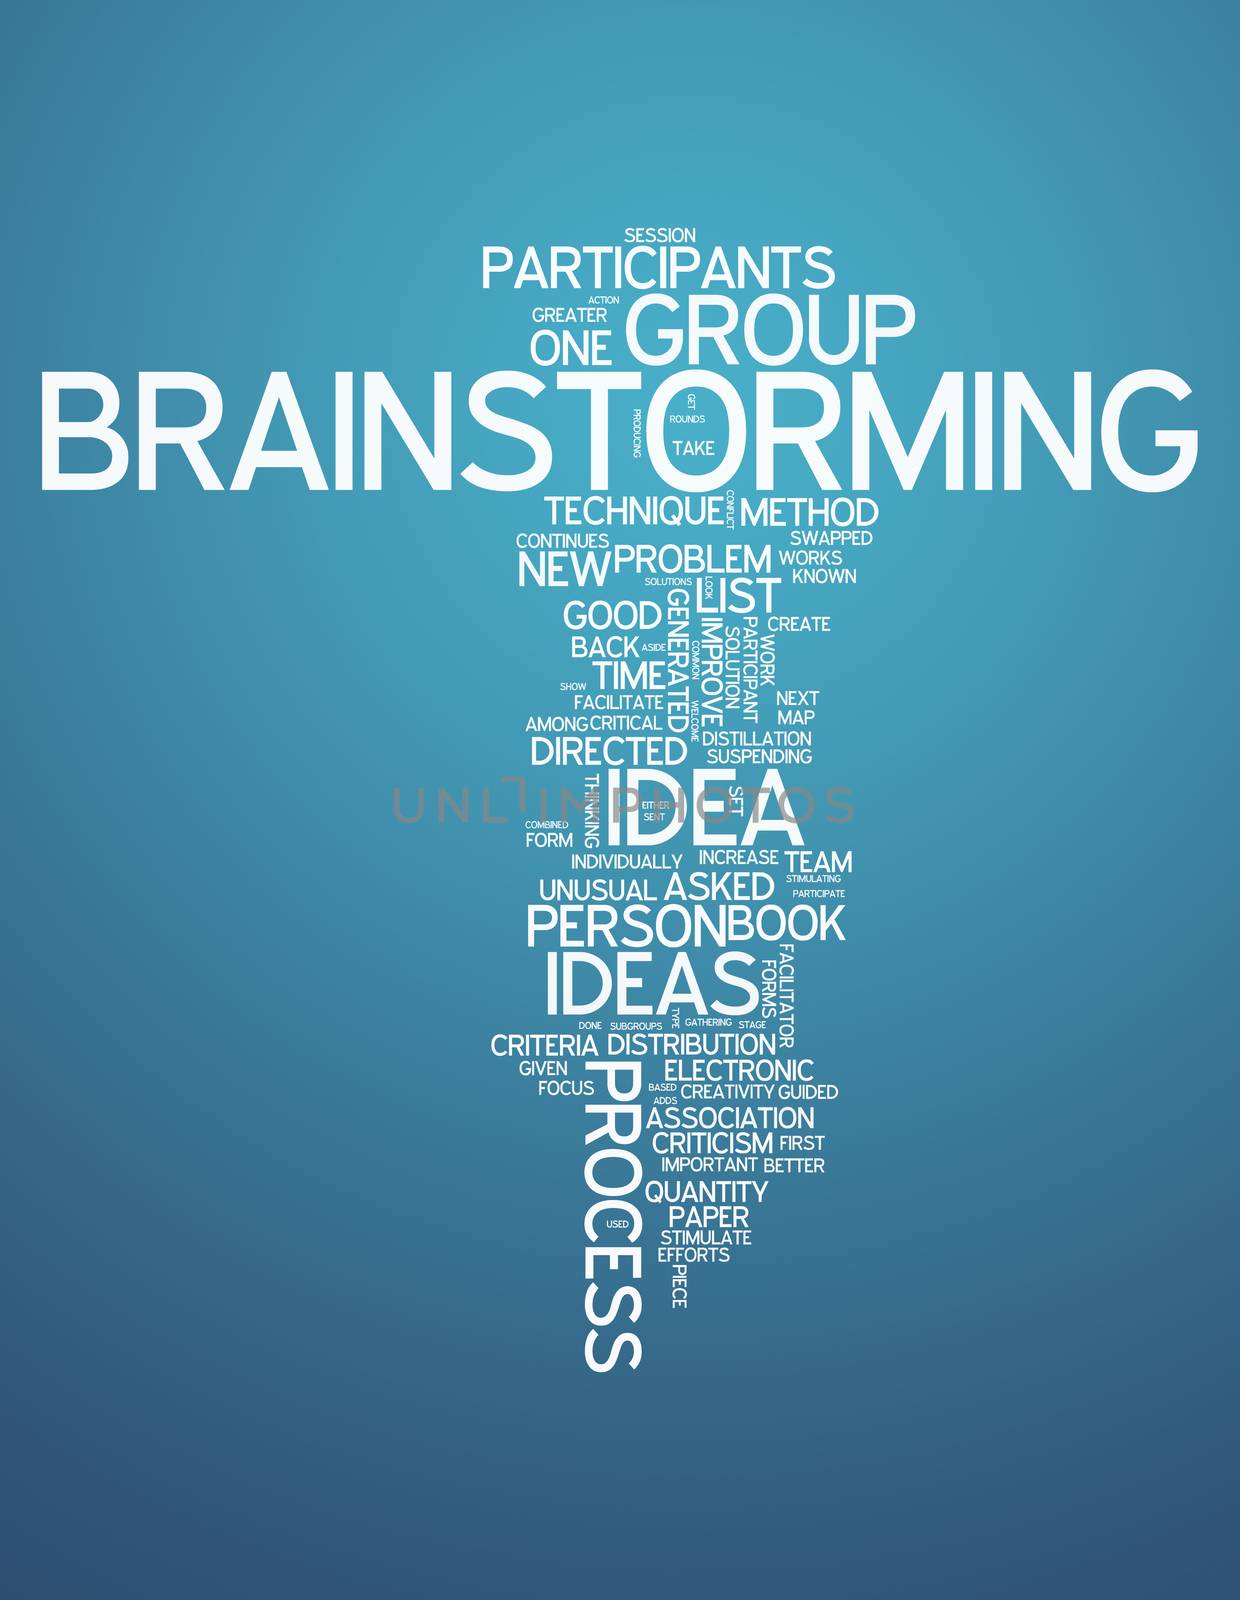 Word Cloud "Brainstorming" by mindscanner